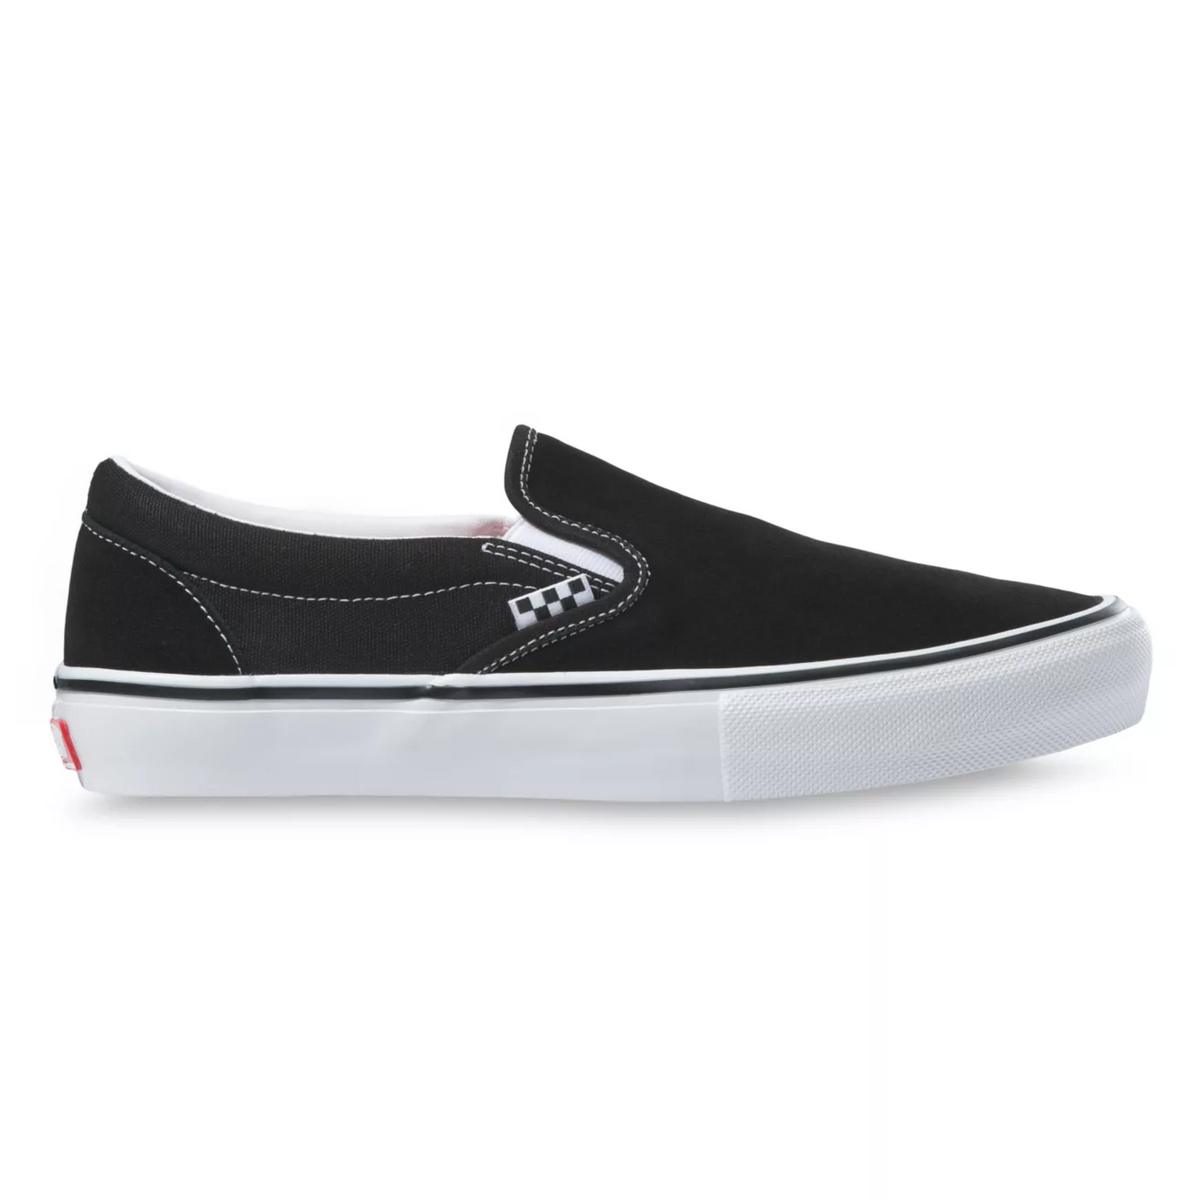 Vans - Skate Slip-On Black/White – My 